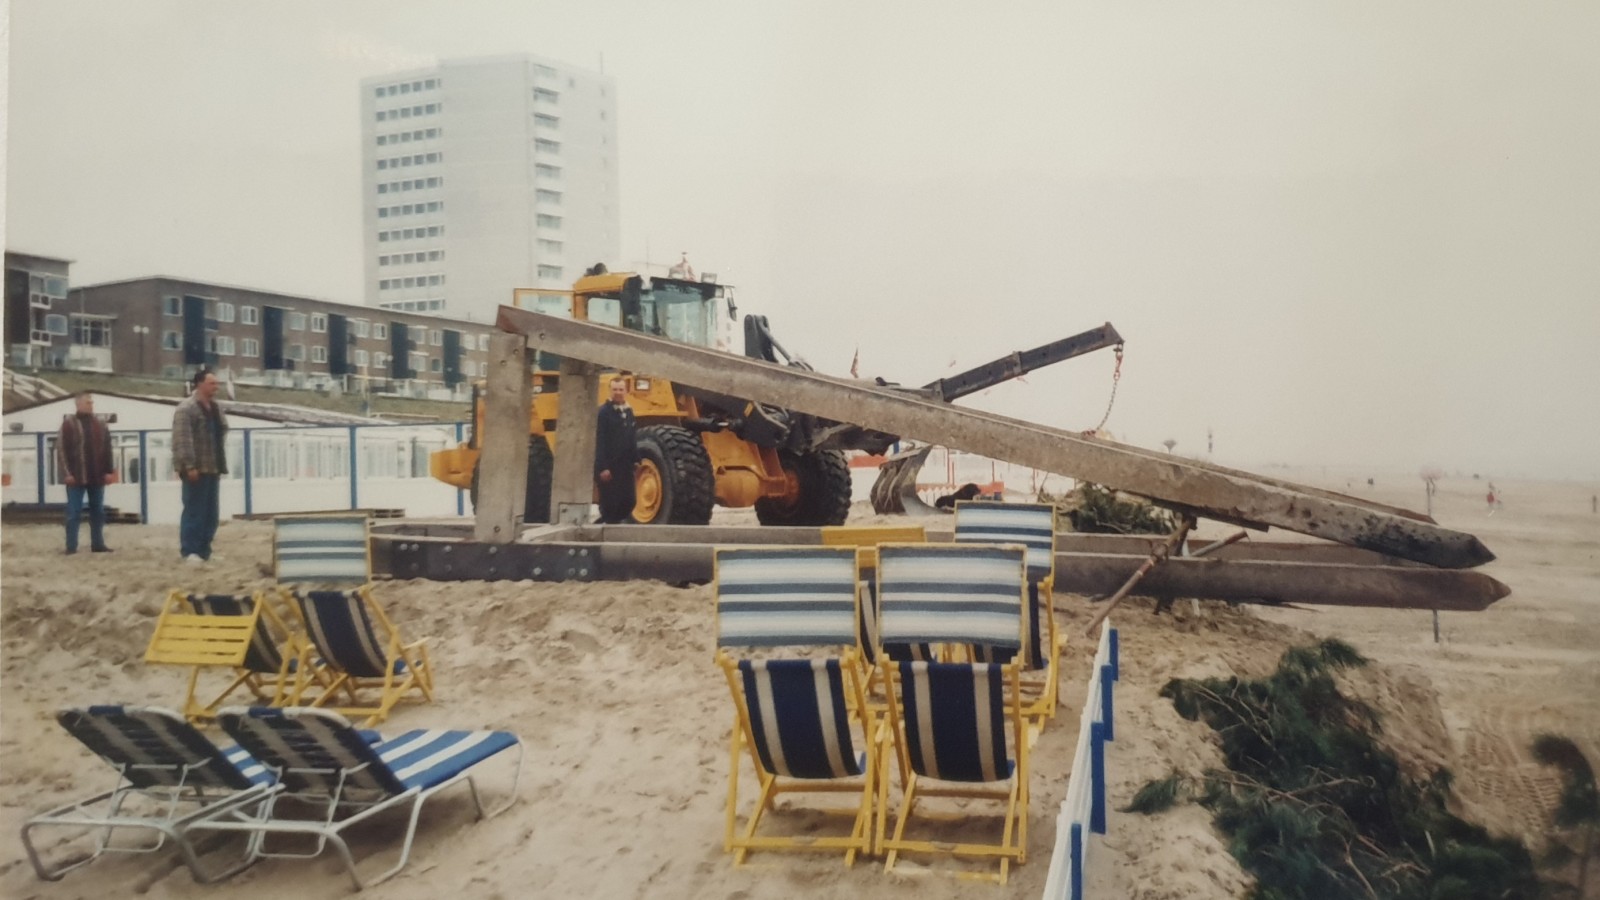 De herplaatsing van de stoel op het strand van Zandvoort